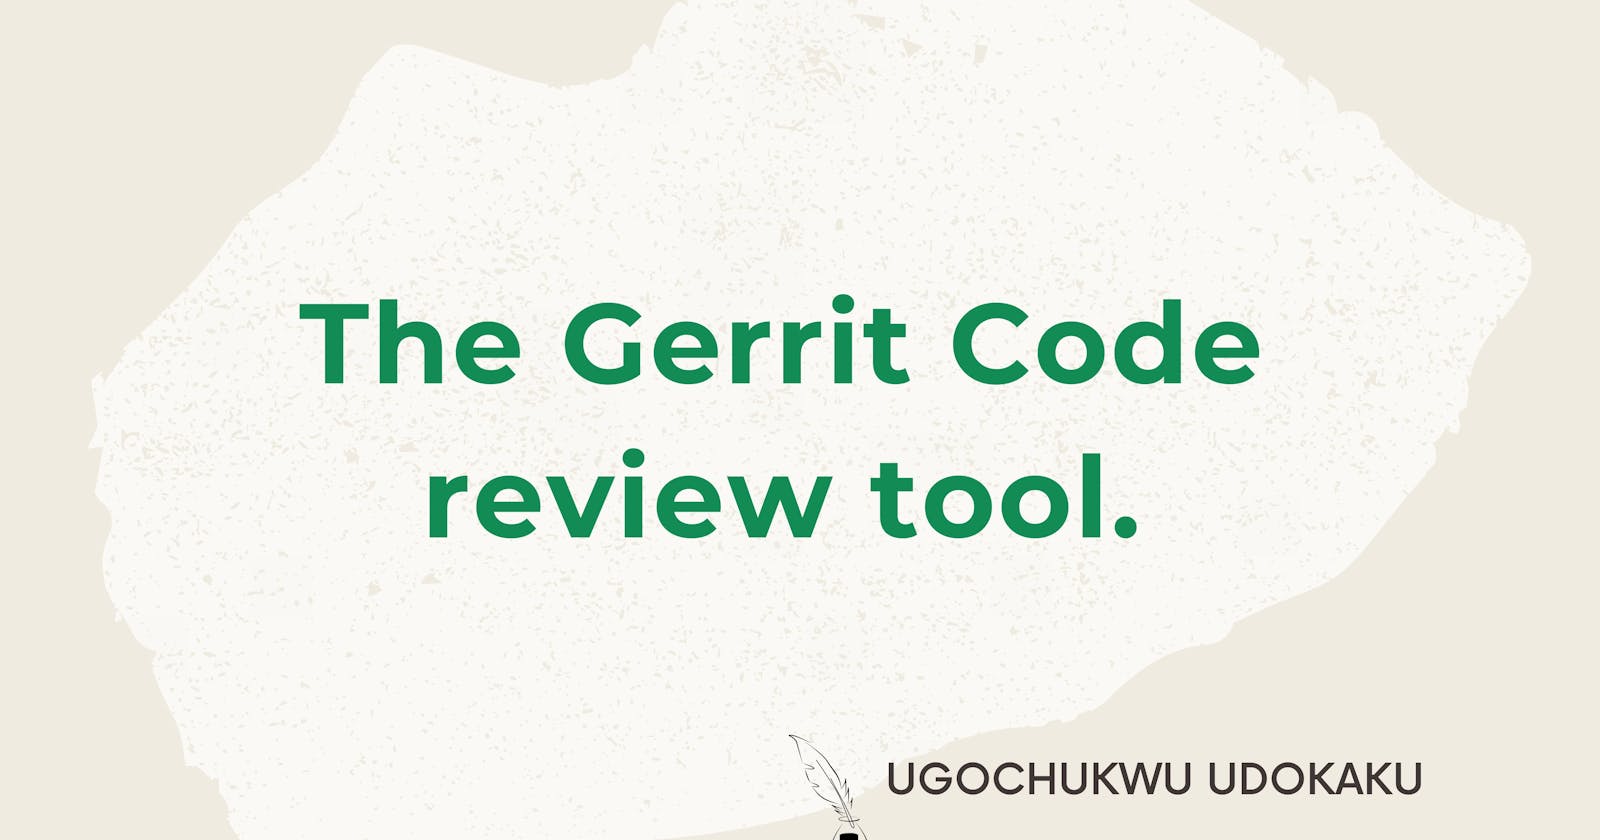 The Gerrit Code review tool.